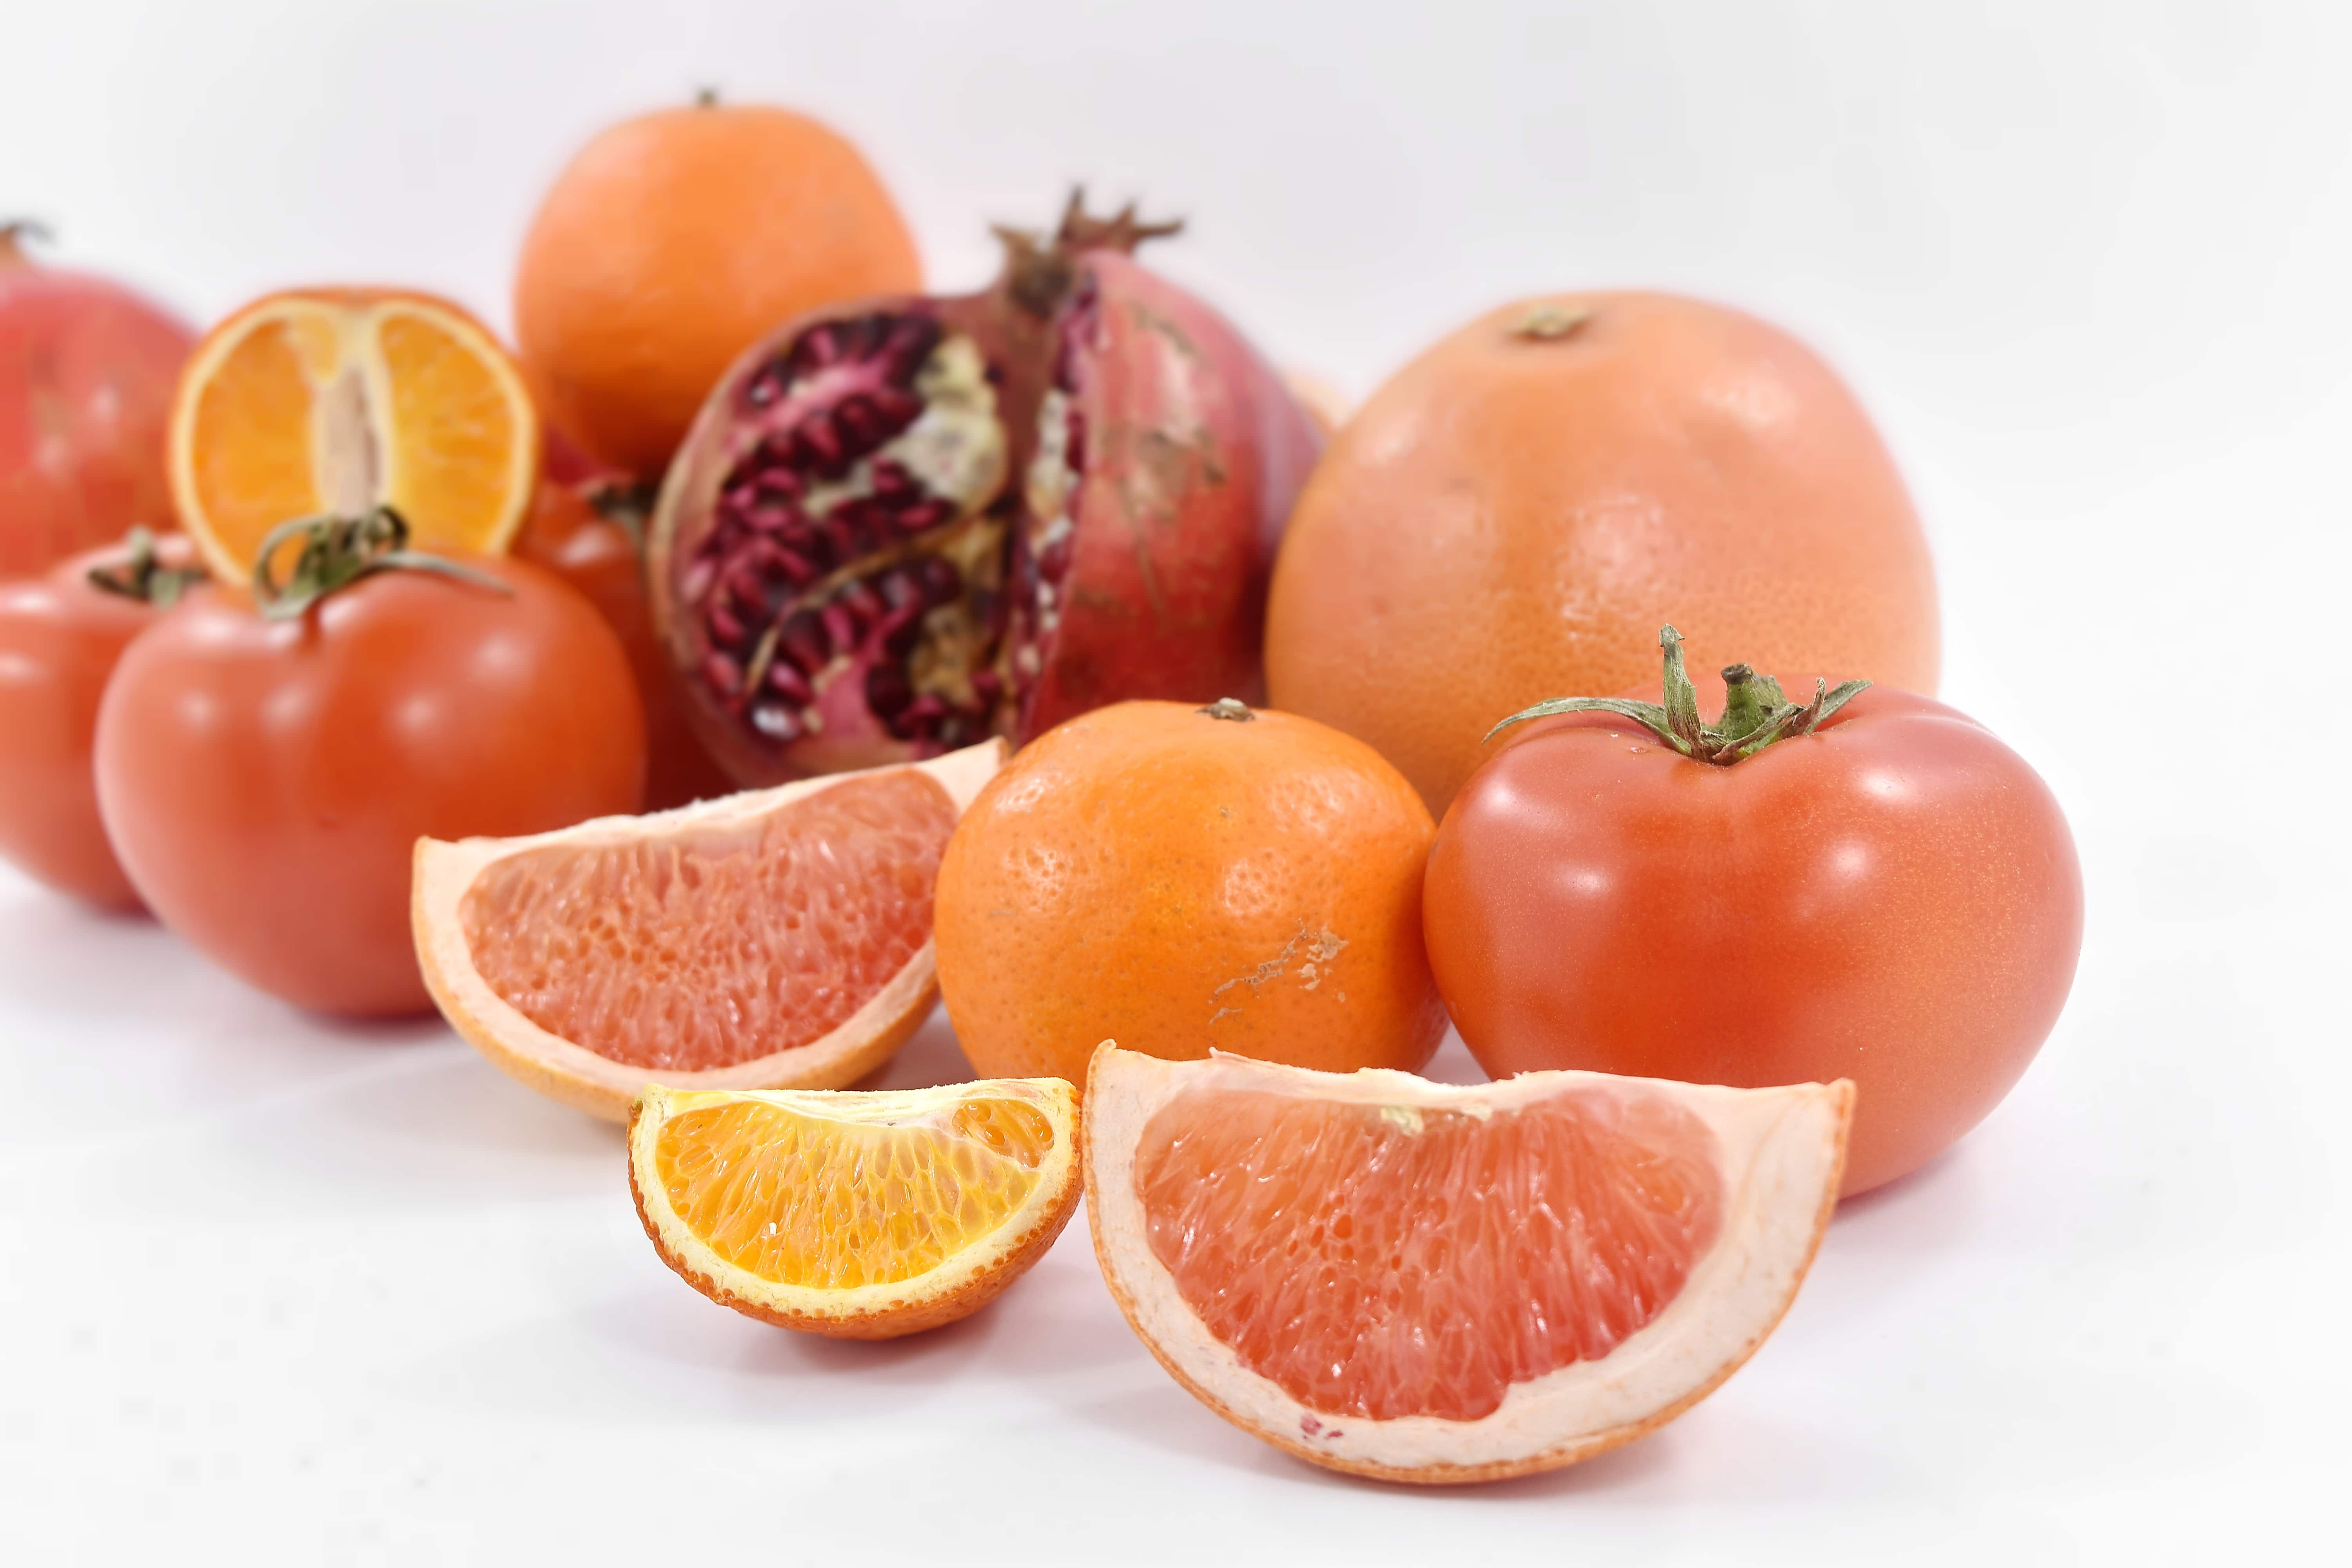 Kostenlose Bild: Obst, Grapefruit, Mandarin, Orange peel, Orangen ...